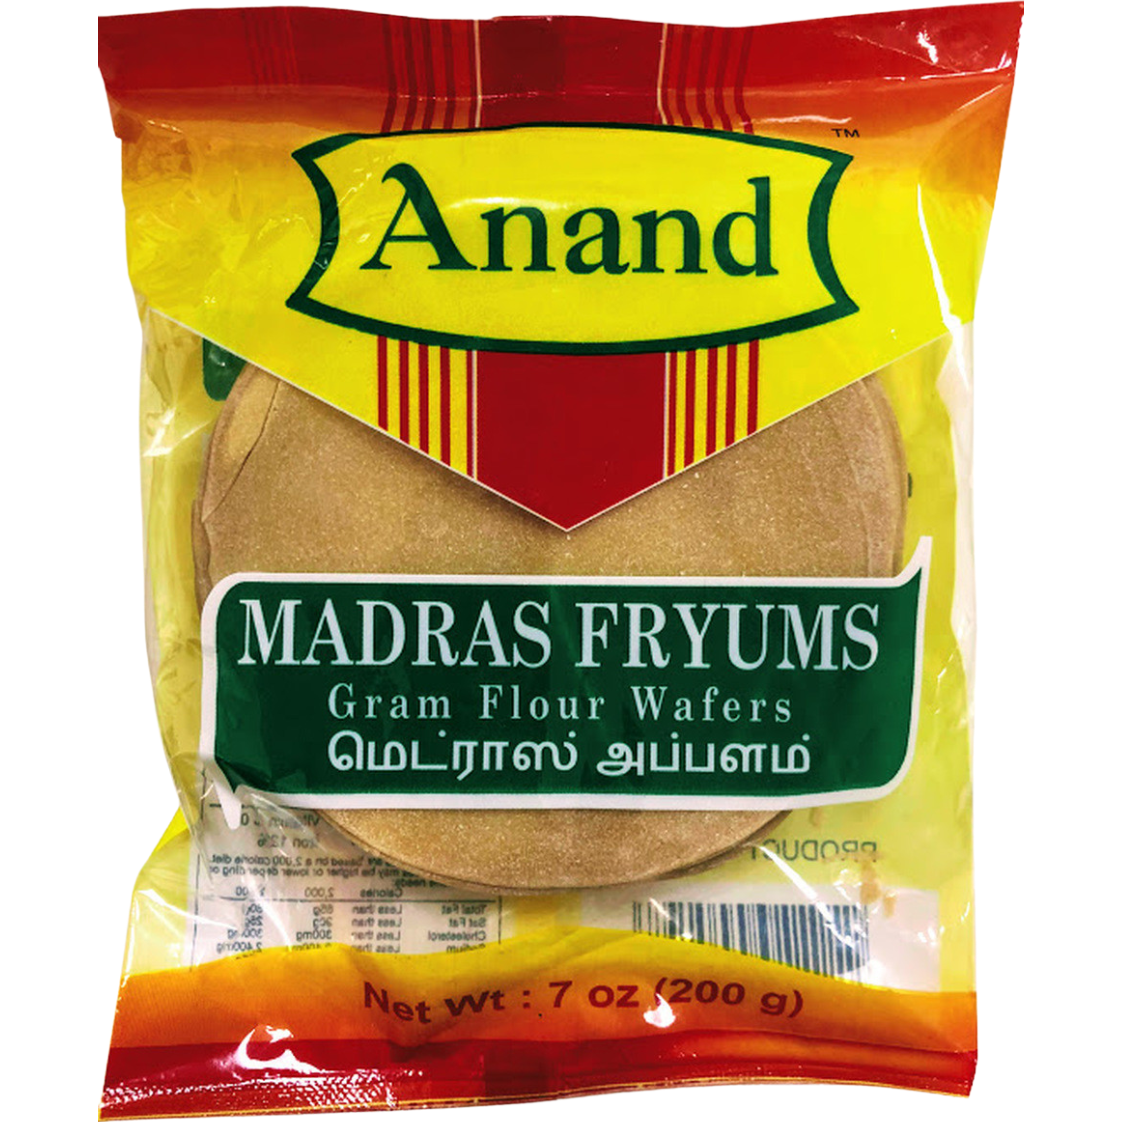 Anand Madras Fryums - 200 Gm (7 Oz)